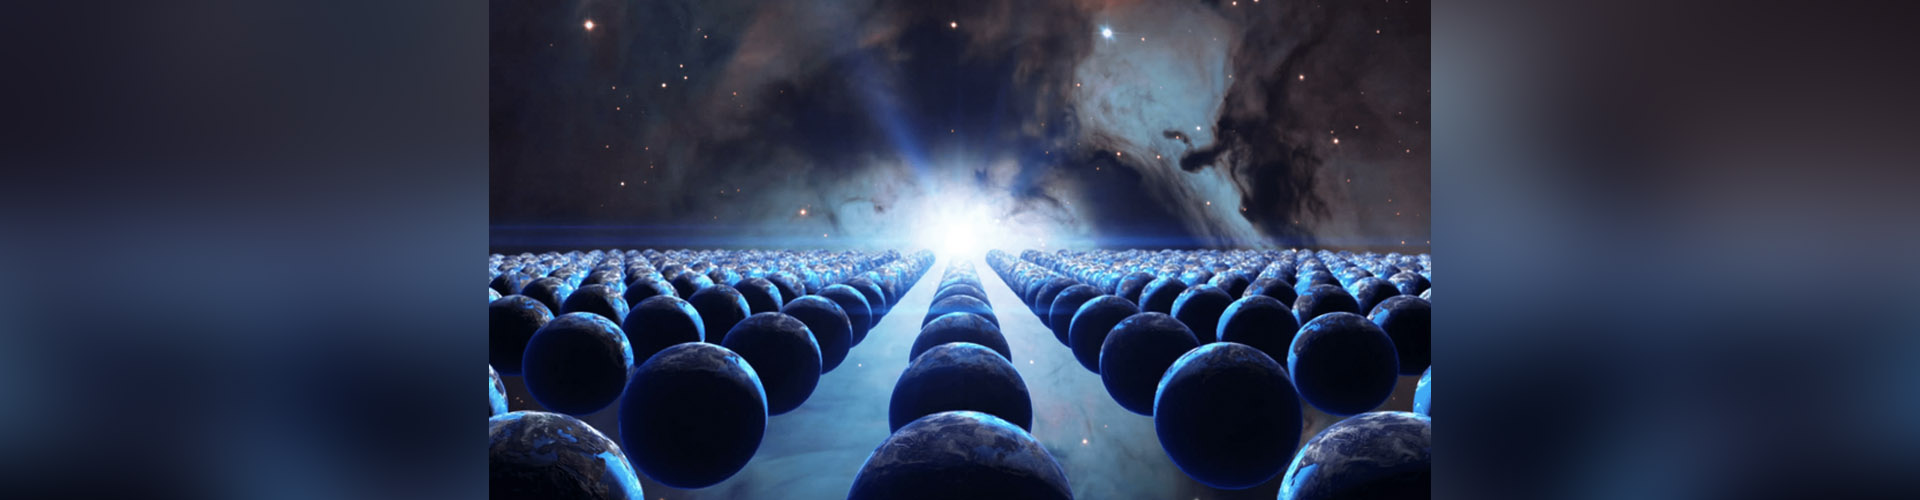 (VIDEO) “Los universos paralelos podrían ser habitables”, según estudio